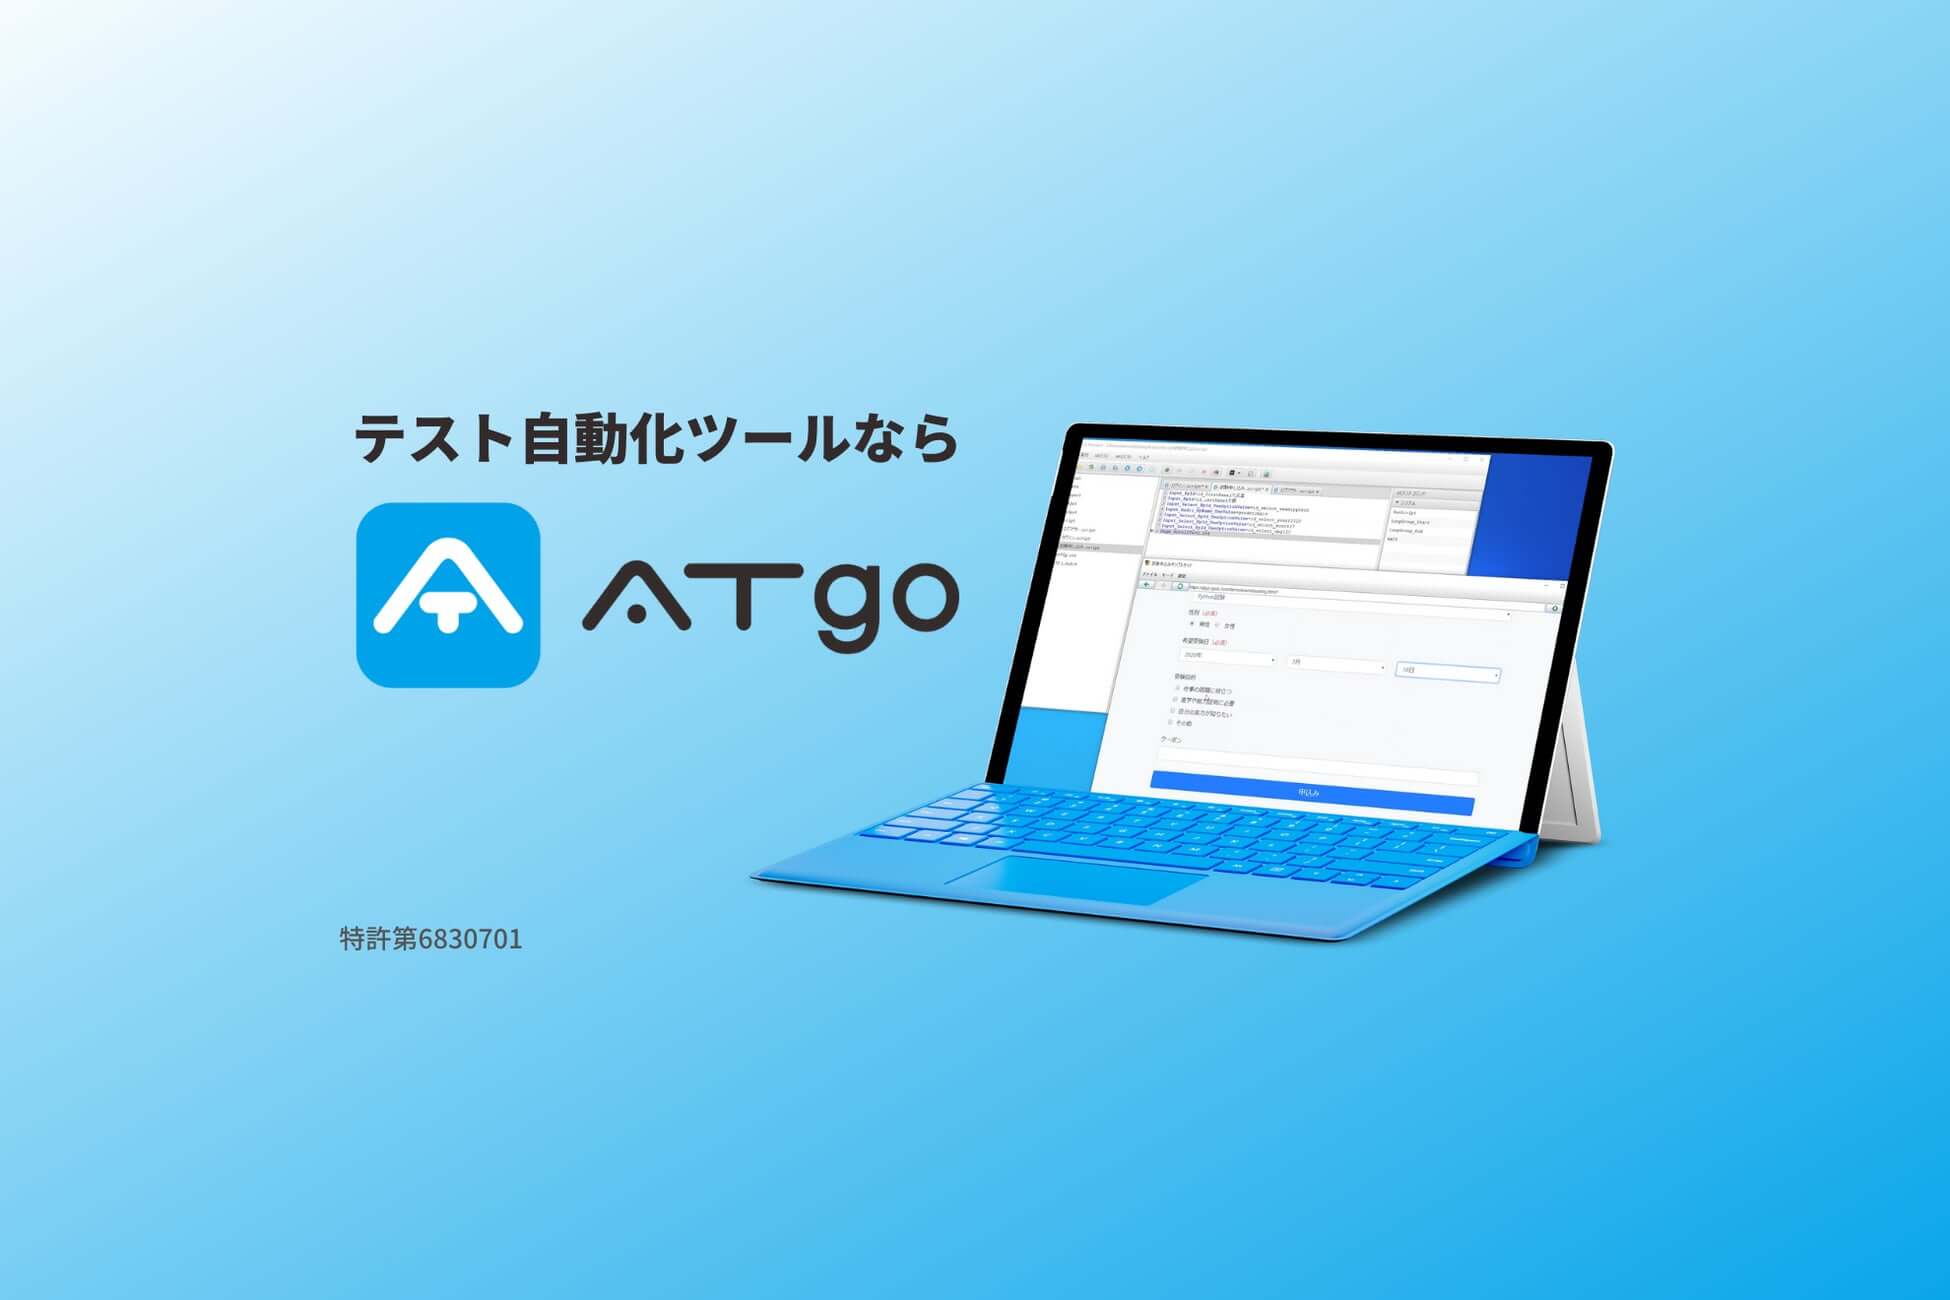 テスト自動化ツール「ATgo（エーティーゴー）」